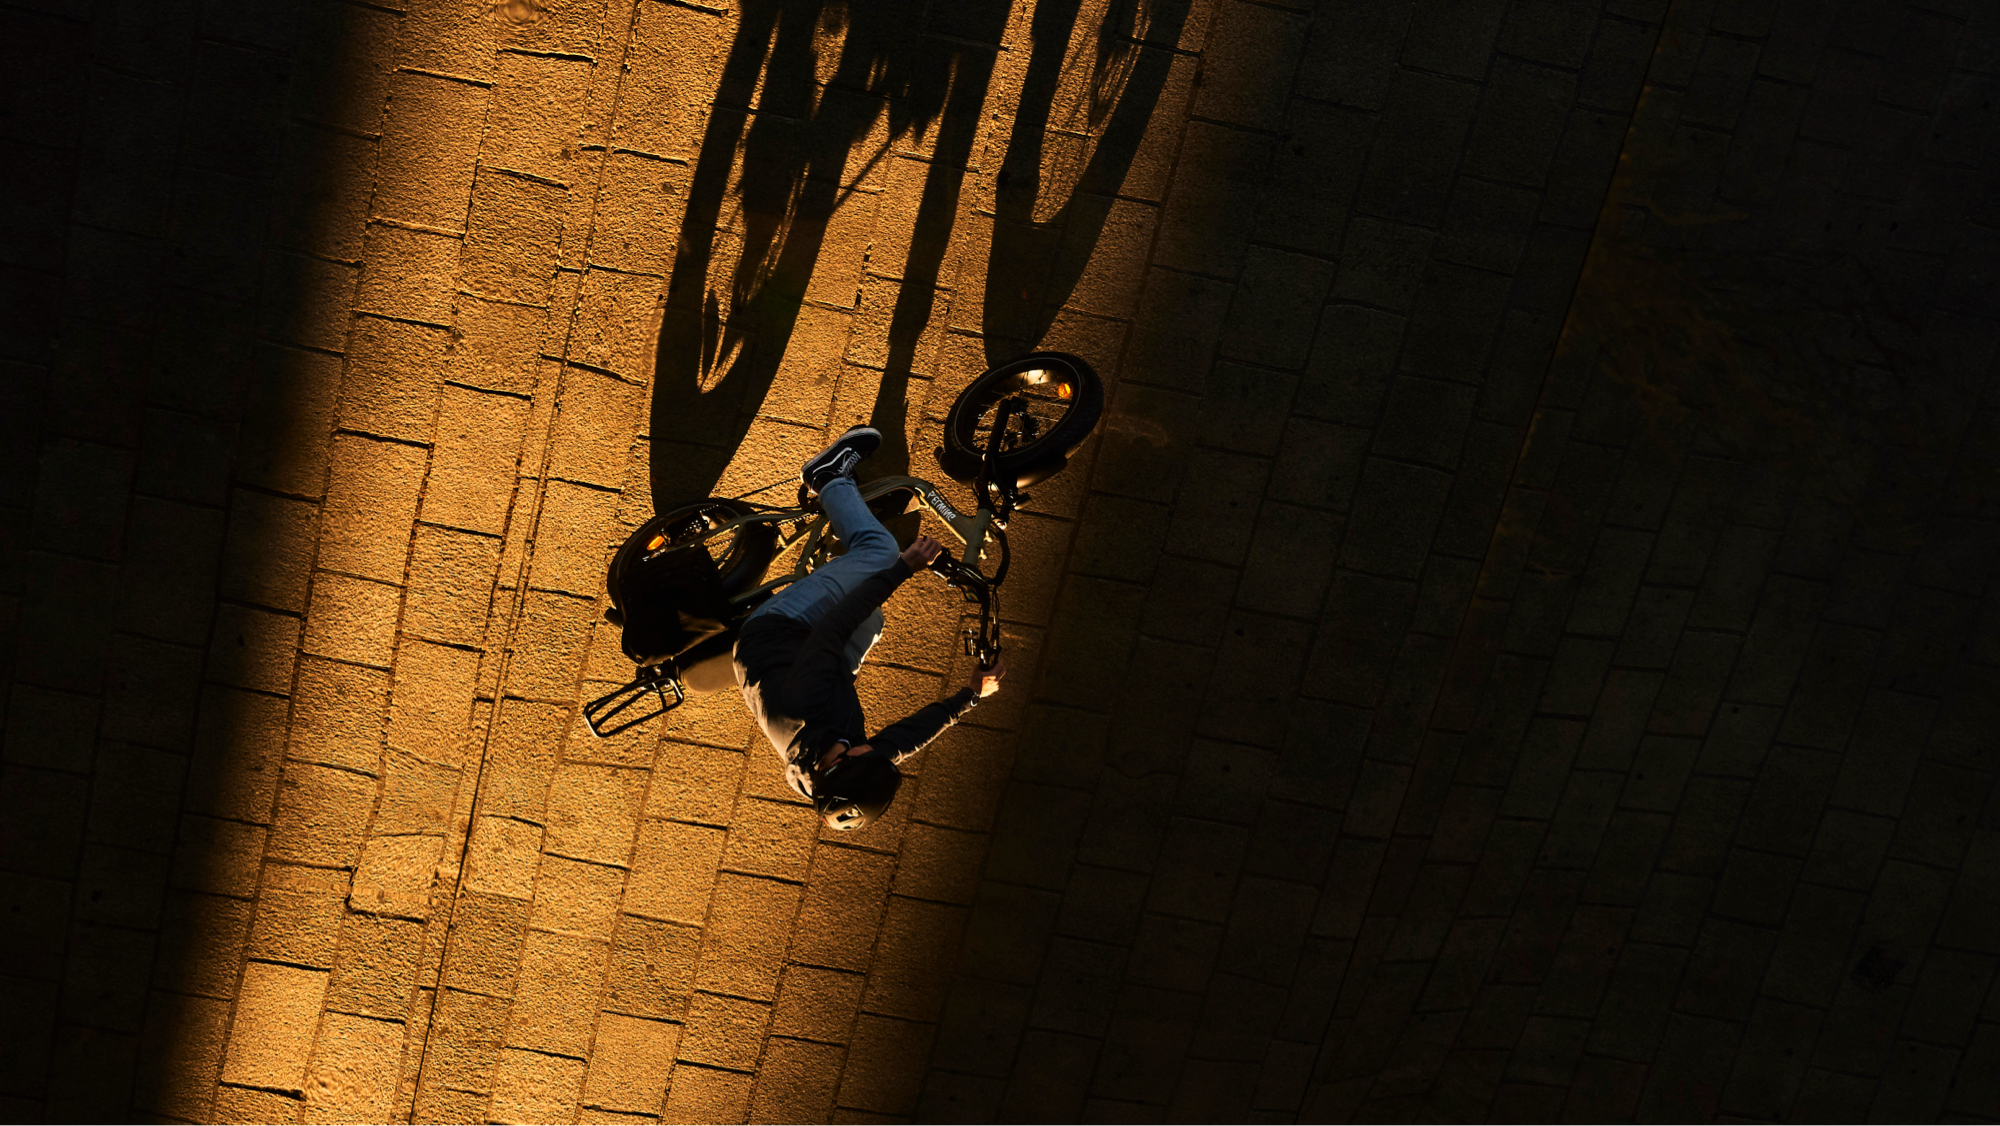 Homme sur un vélo Yuvy 2 vu de haut entre ombre et lumière